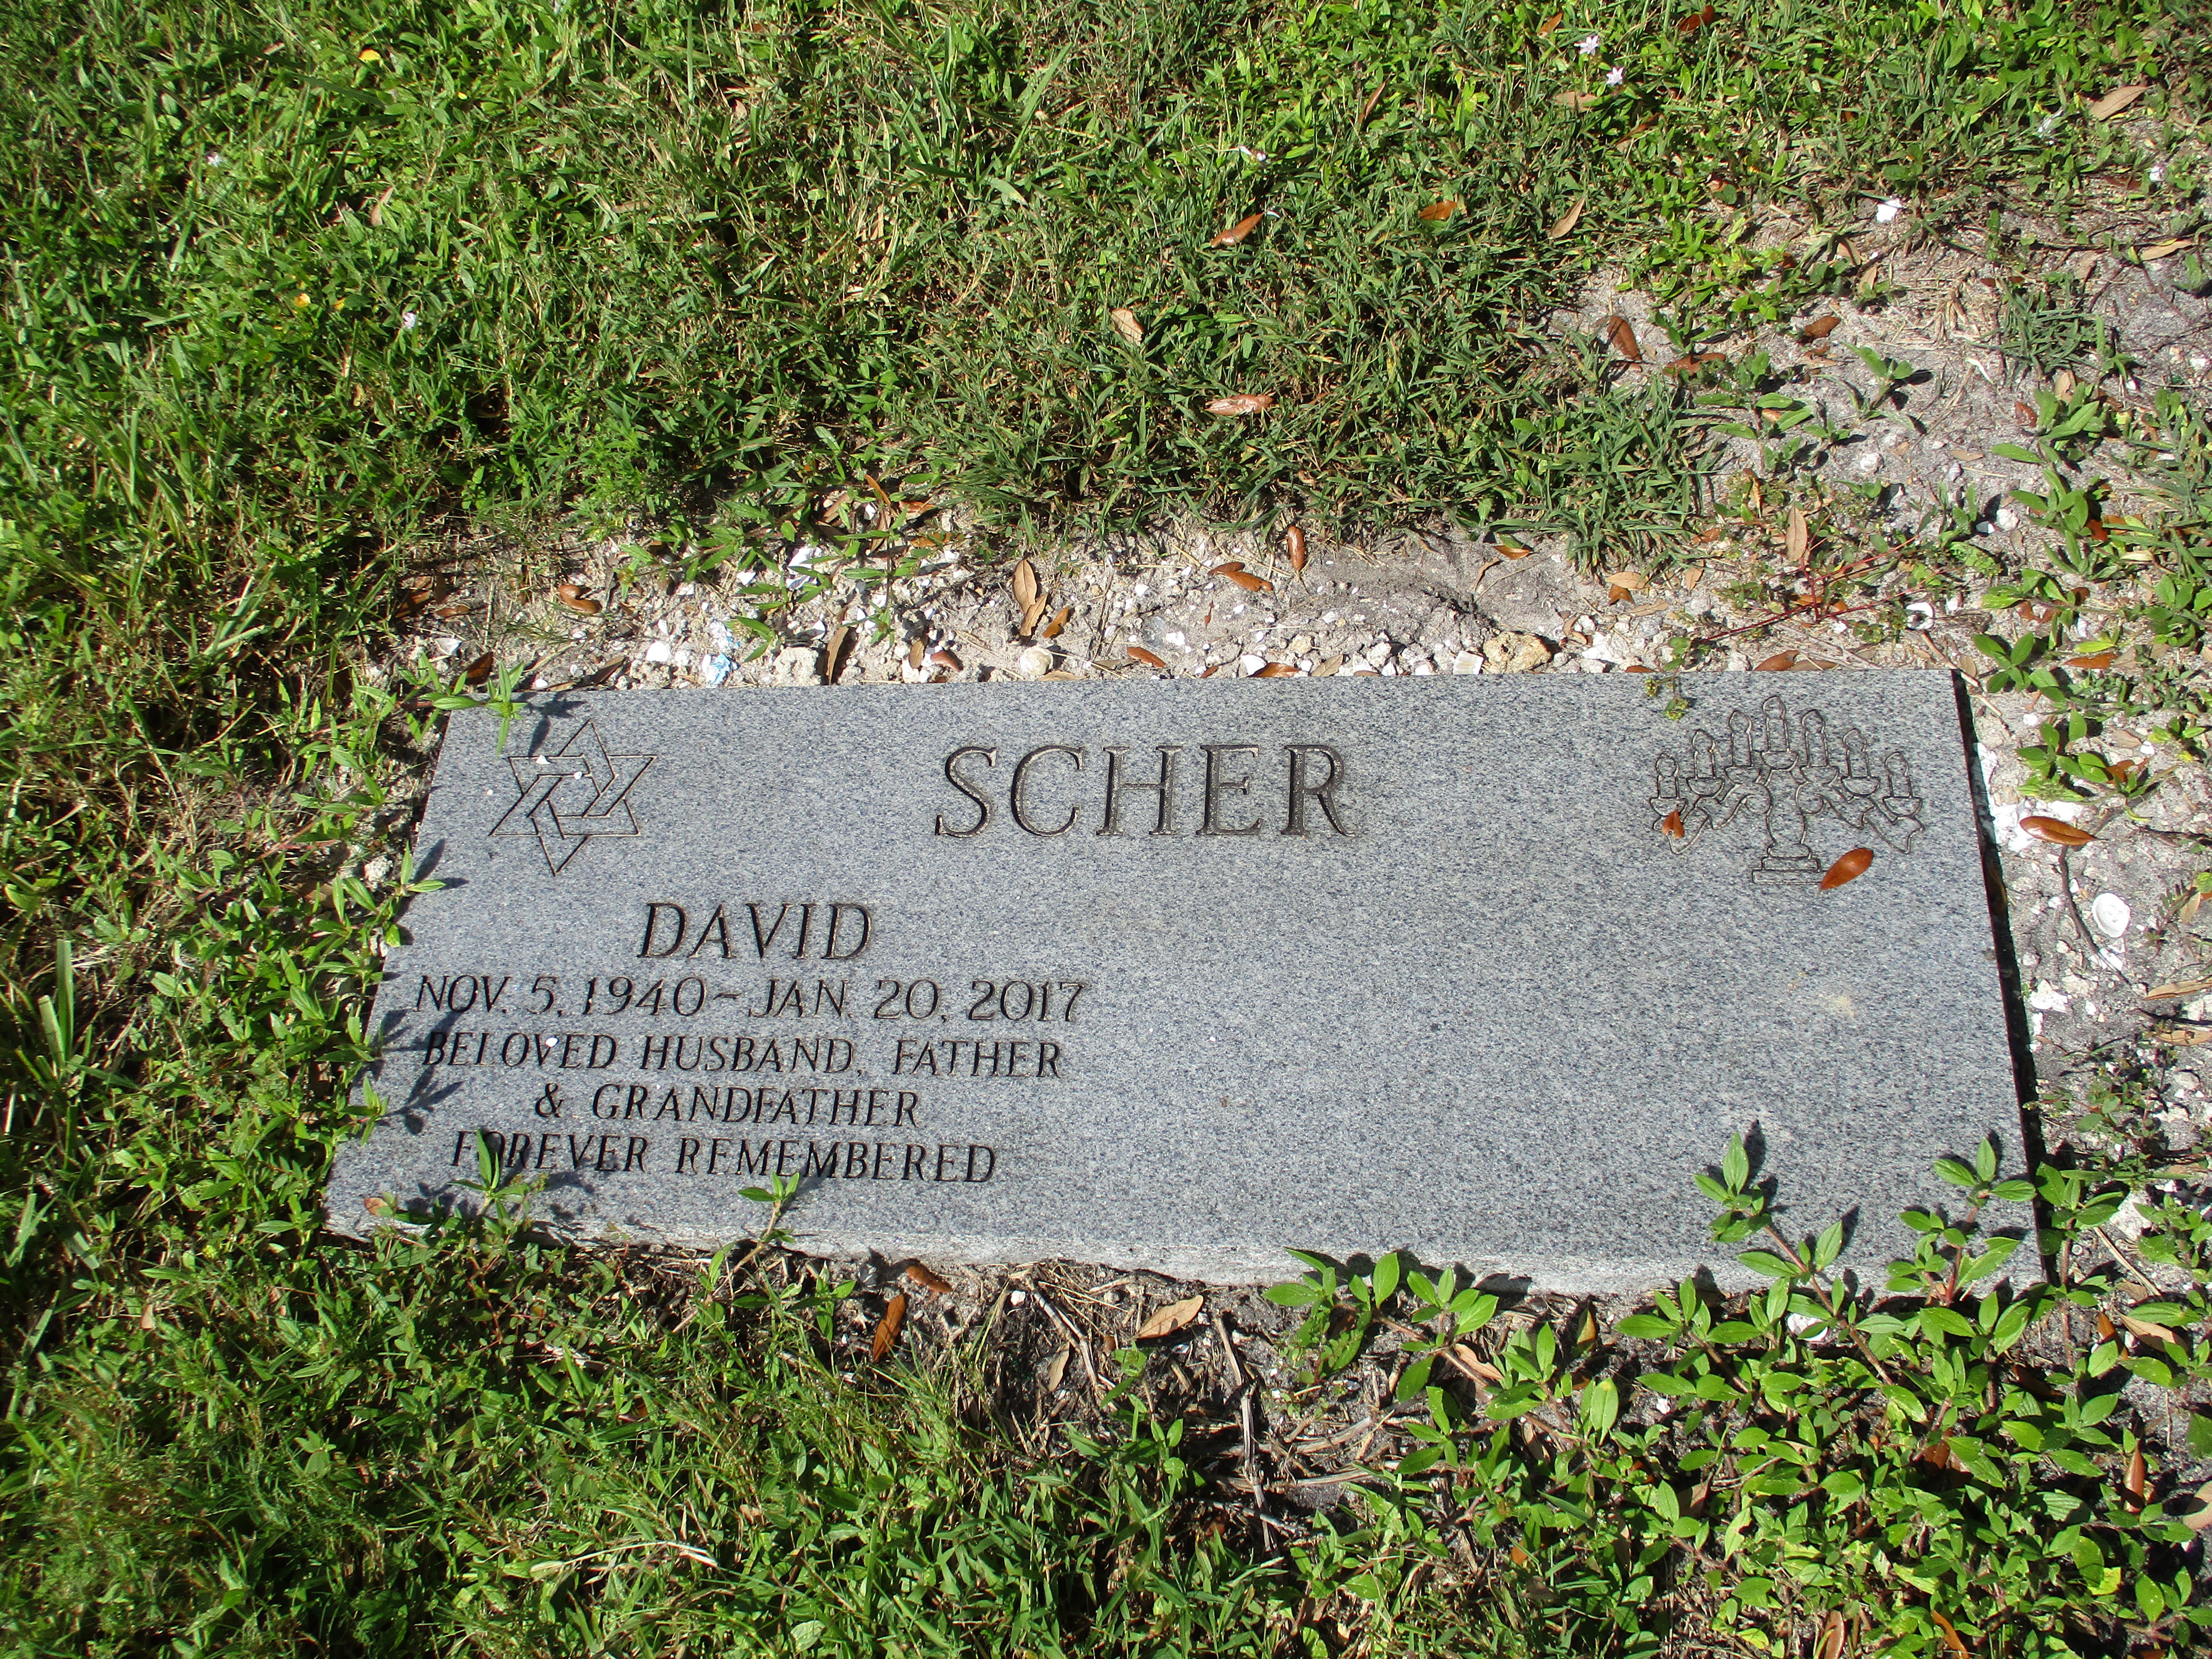 David Scher